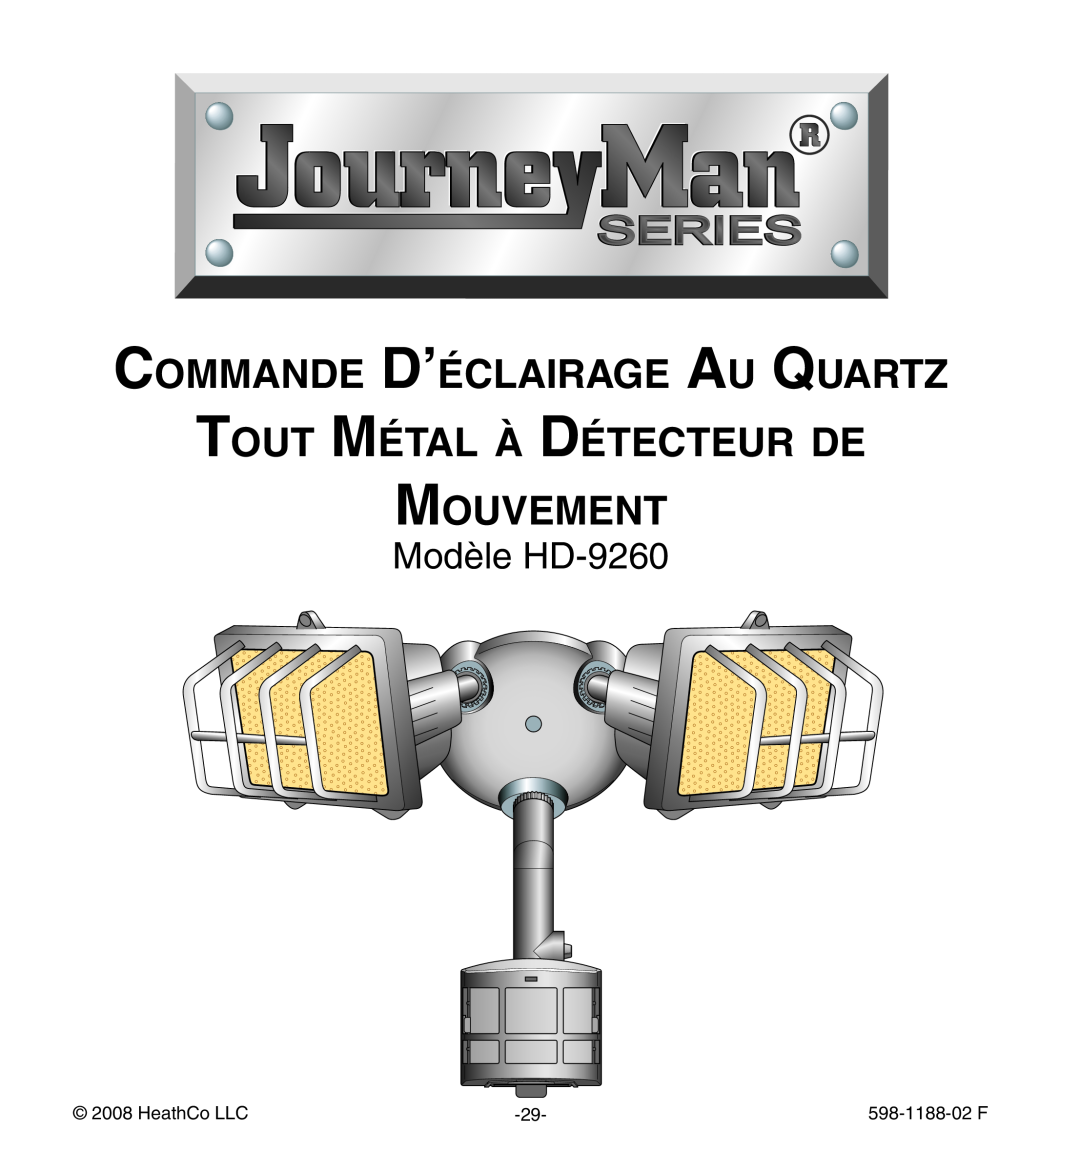 Heath Zenith manual Commande D’éclairage Au Quartz, Tout Métal à Détecteur de Mouvement, Modèle HD-9260, HeathCo LLC 